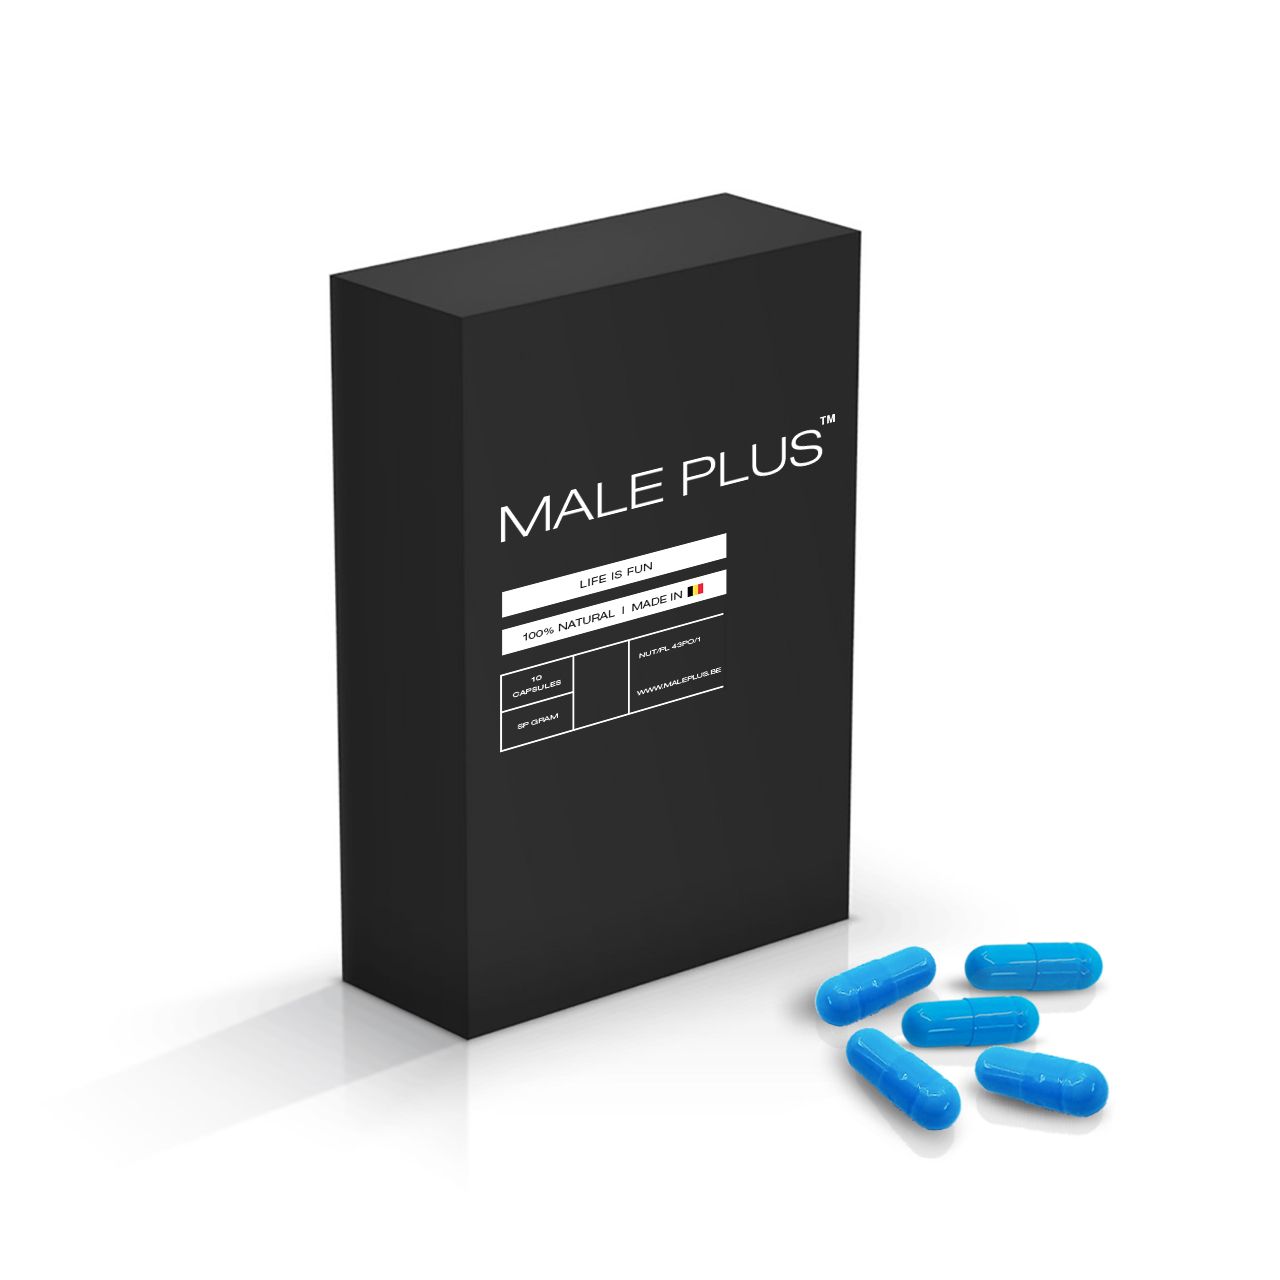 Male Plus is 100% natuurlijk dankzij Maca & Ginseng: nu 30 capsules kopen + 10 capsules gratis!